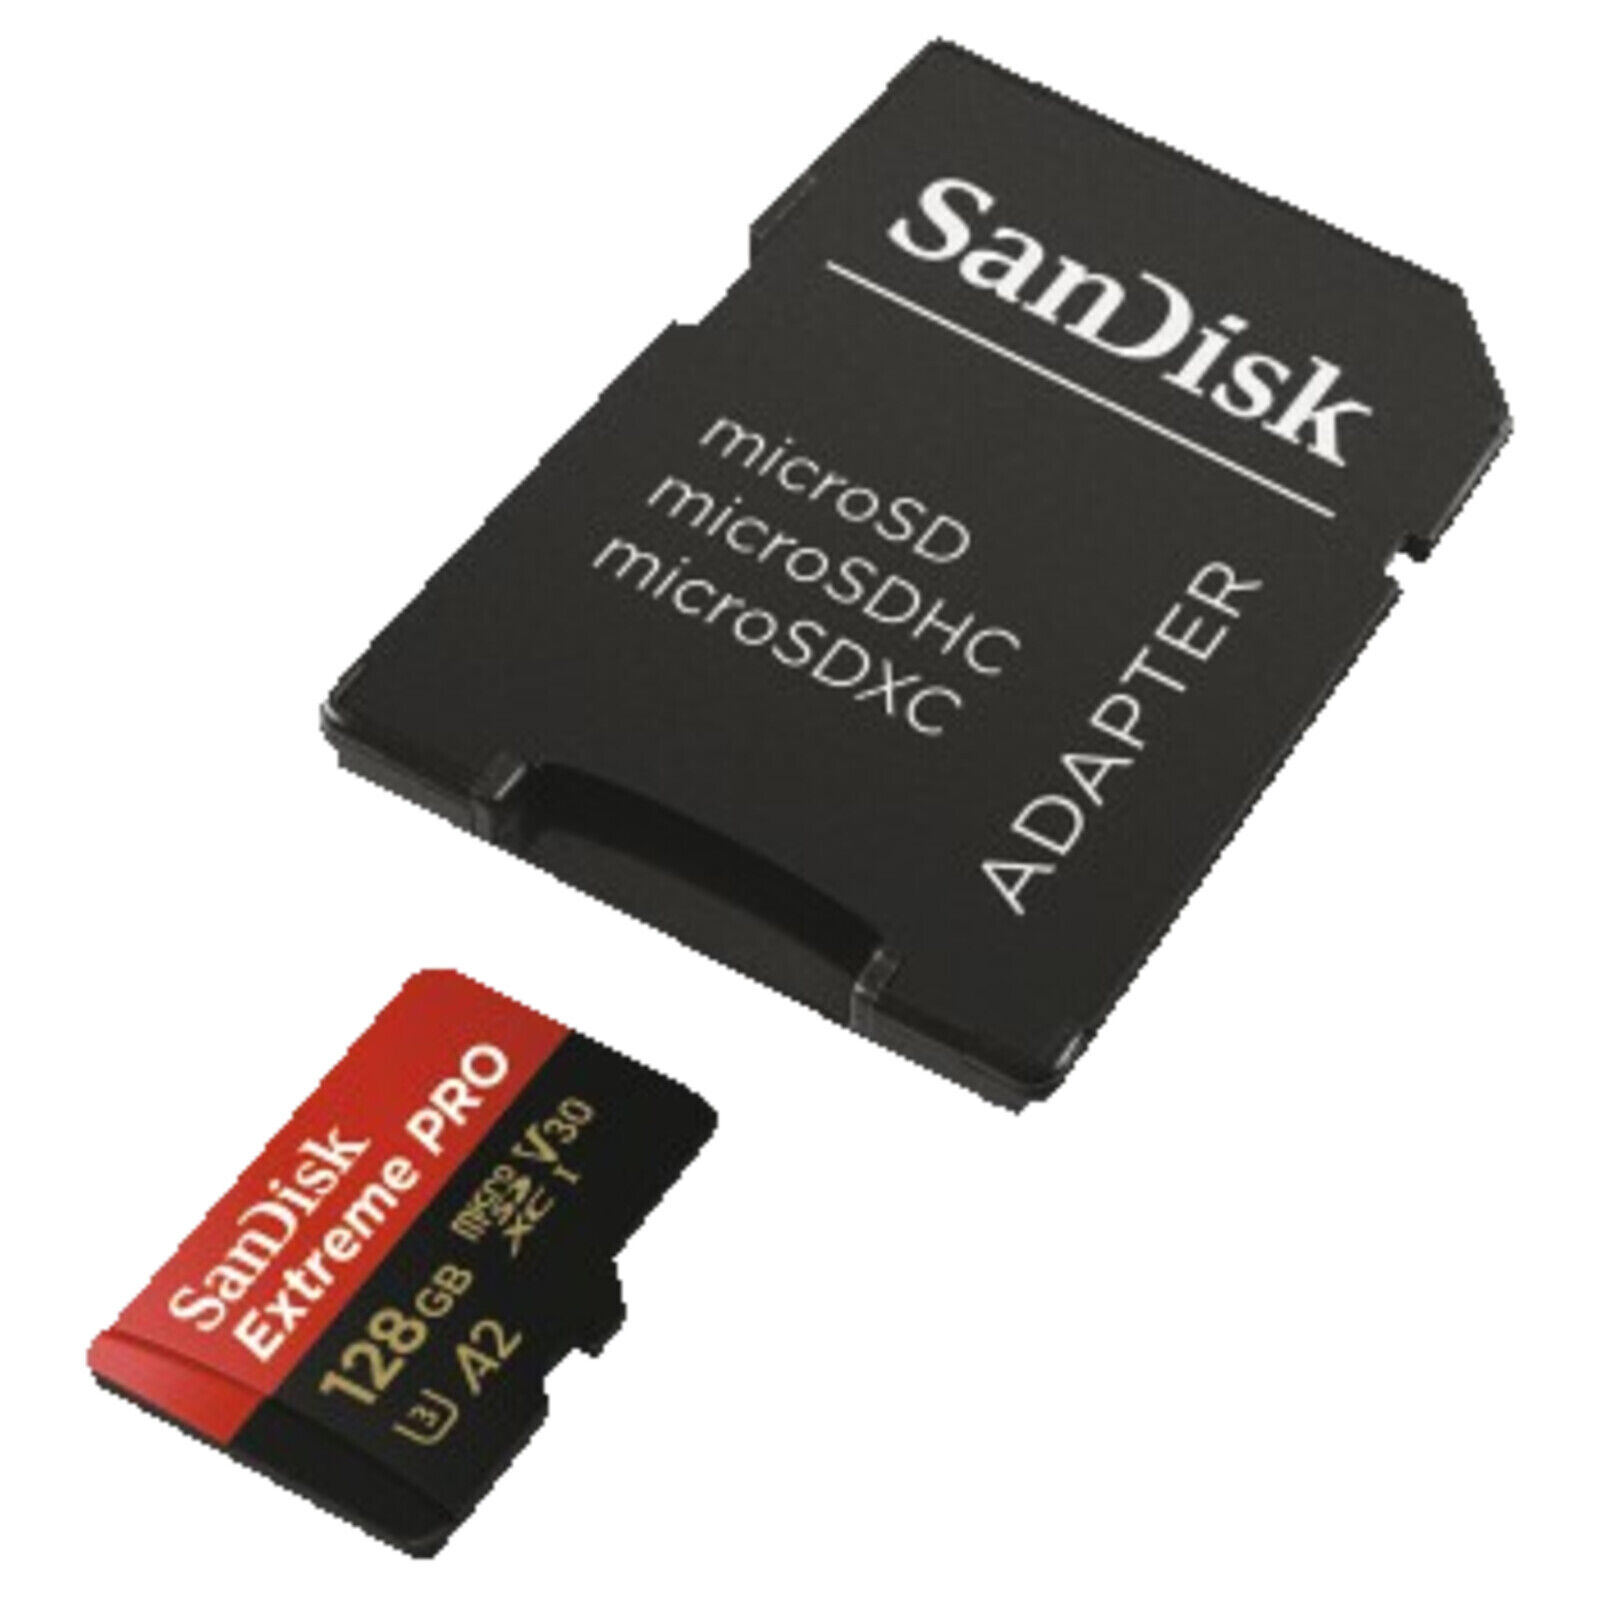 Bild zu 128GB Micro-SDXC Speicherkarte Sandisk Extreme Pro für 19€ (Vergleich: 22,99€)